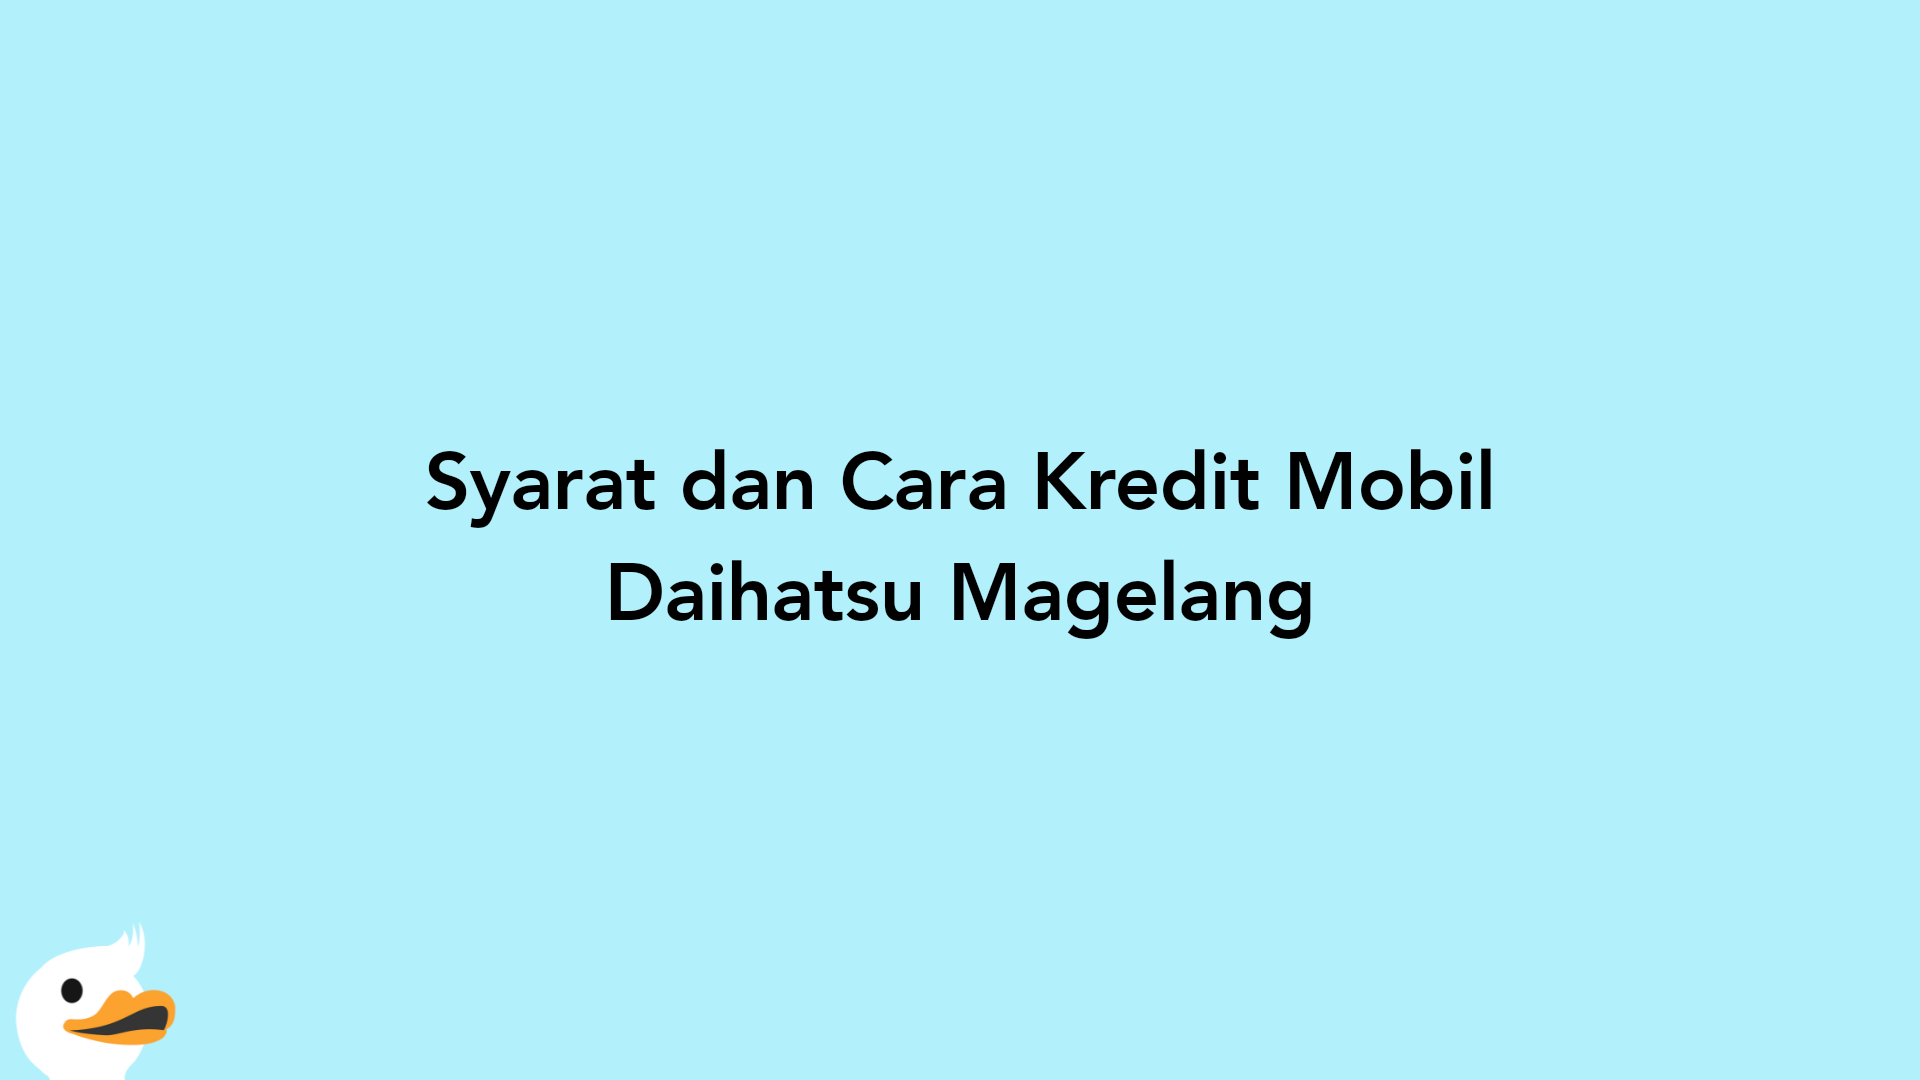 Syarat dan Cara Kredit Mobil Daihatsu Magelang